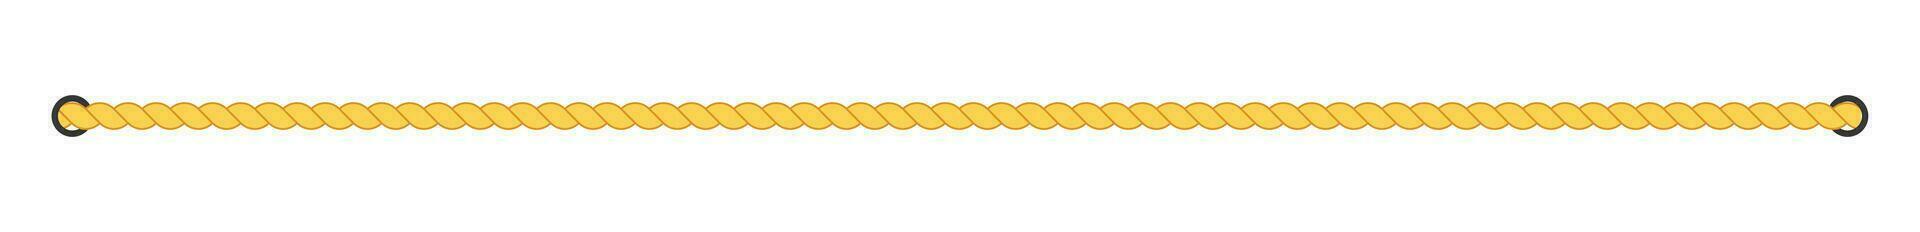 corda striscia. forte cordone corde per fissaggio e legatura con interlacciato fibra modello e durevole vettore textures